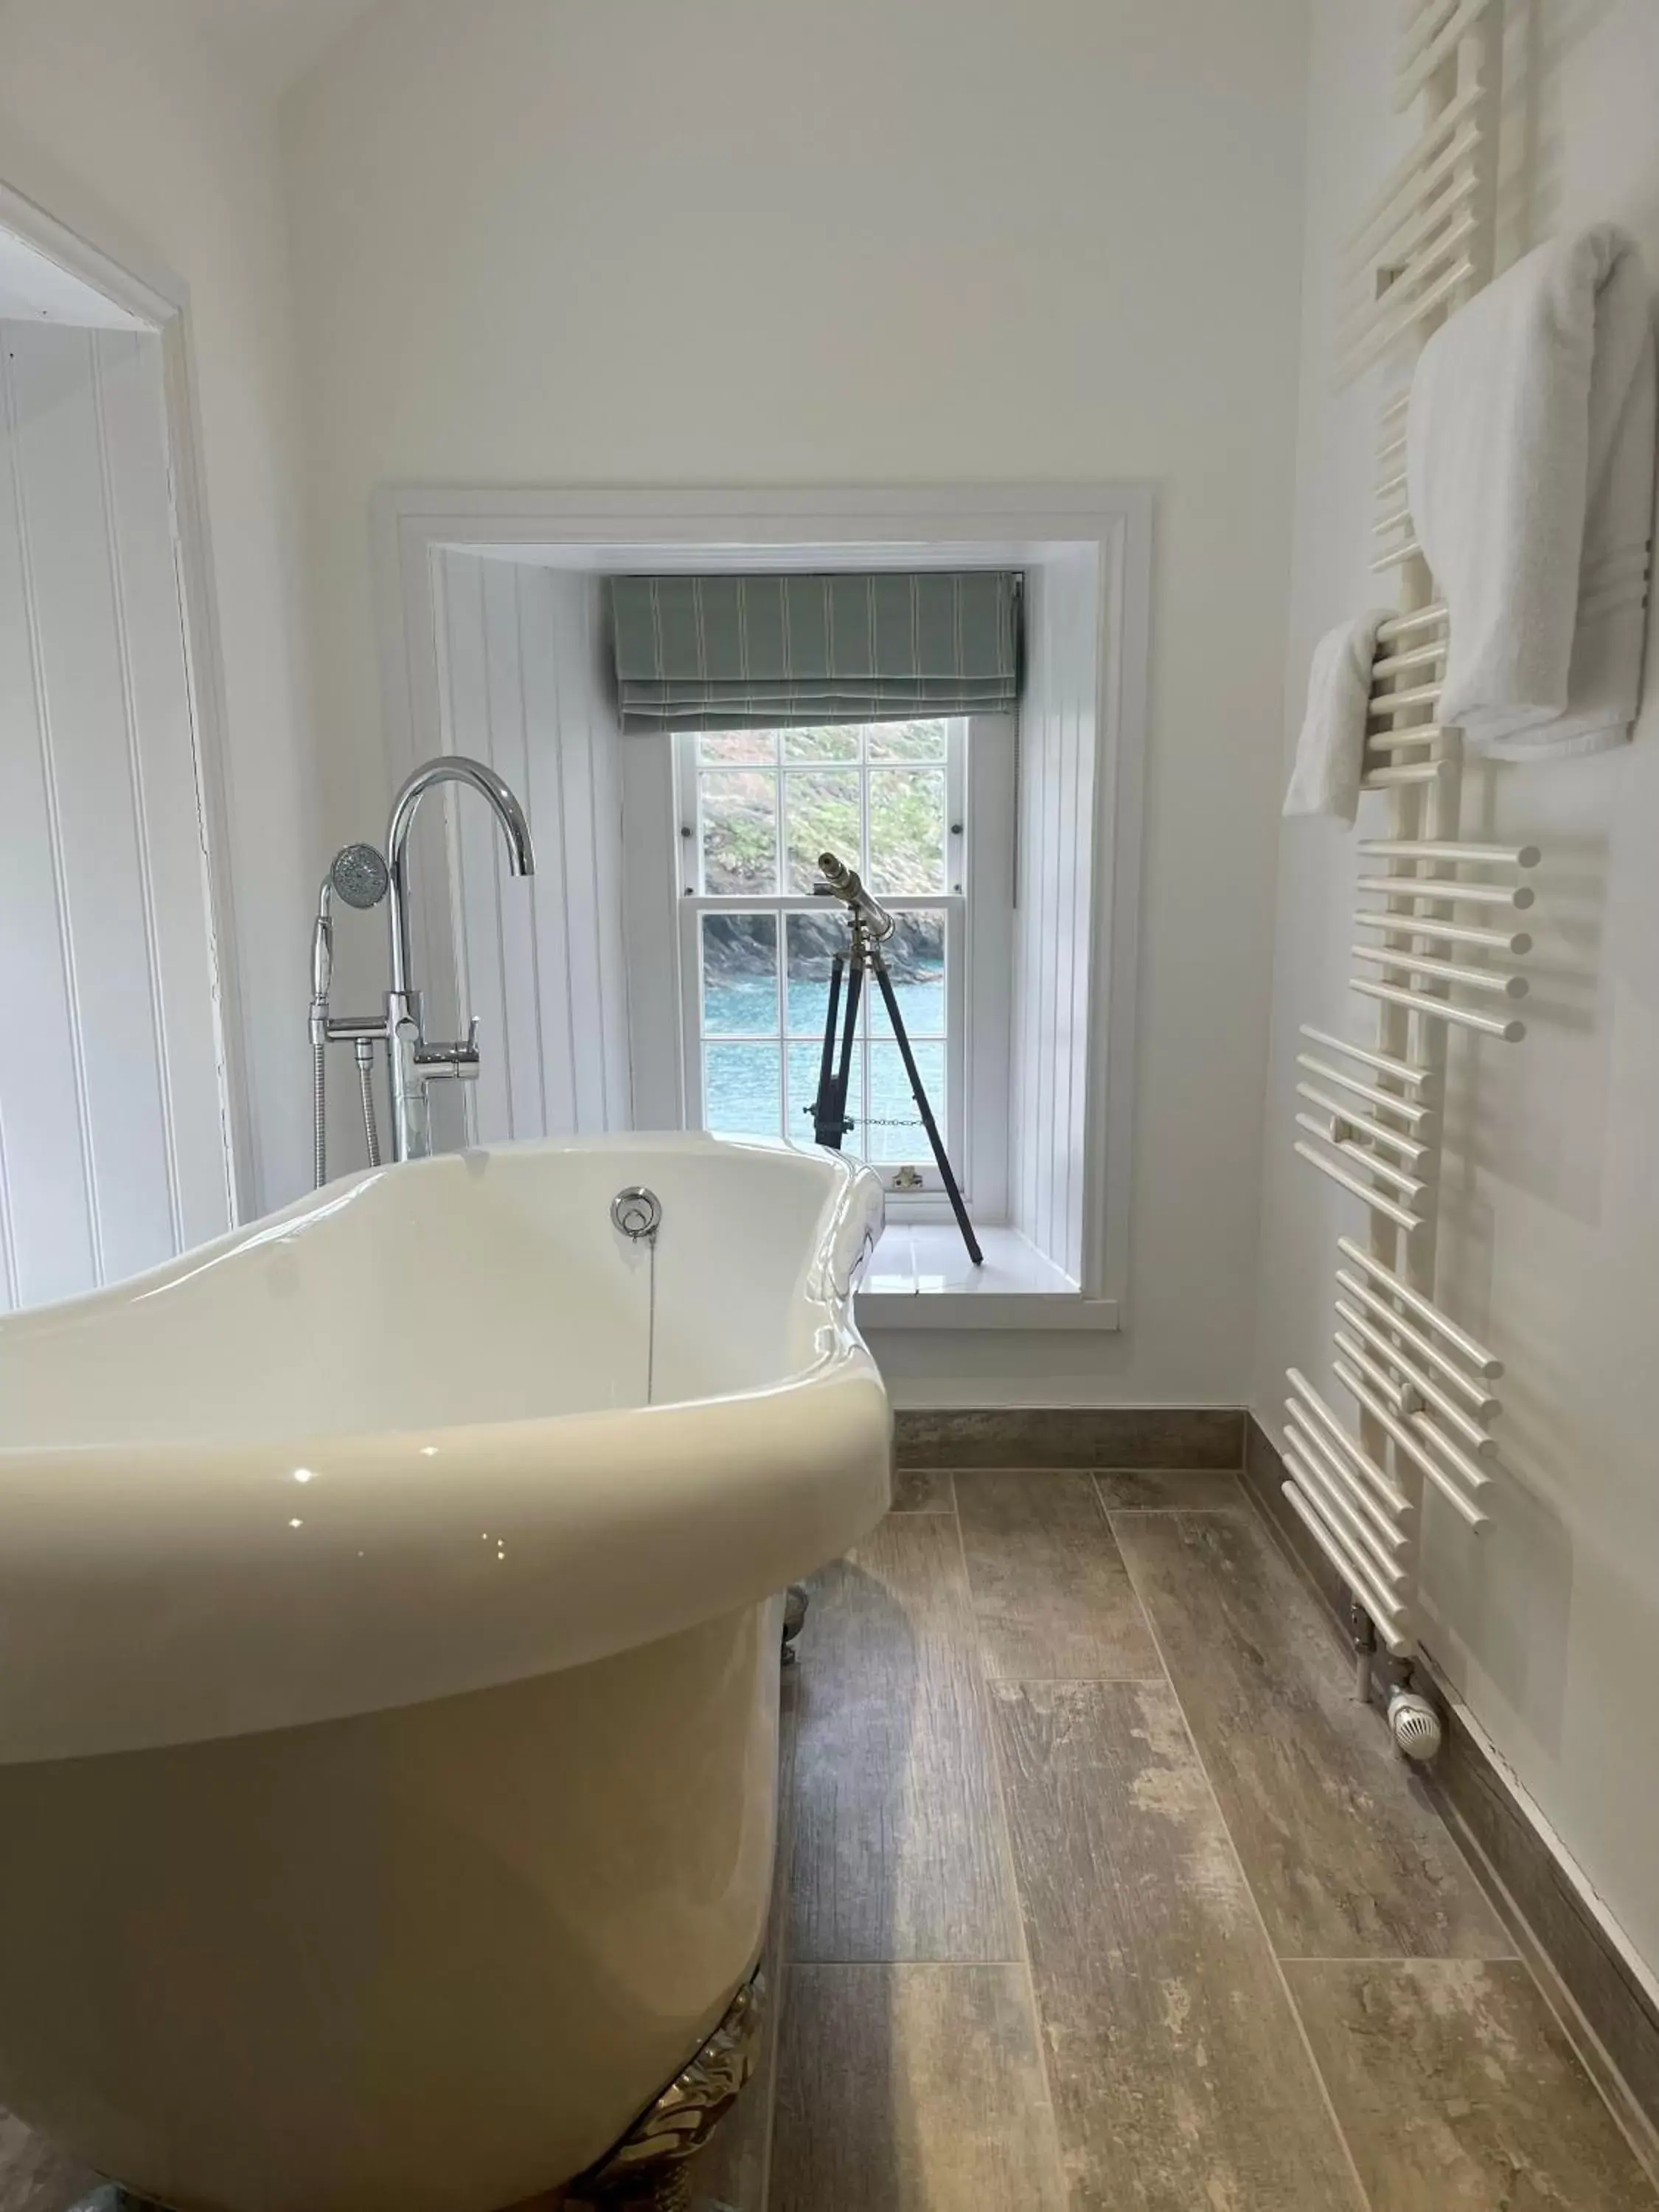 Bath, Bathroom in Lugger Hotel ‘A Bespoke Hotel’